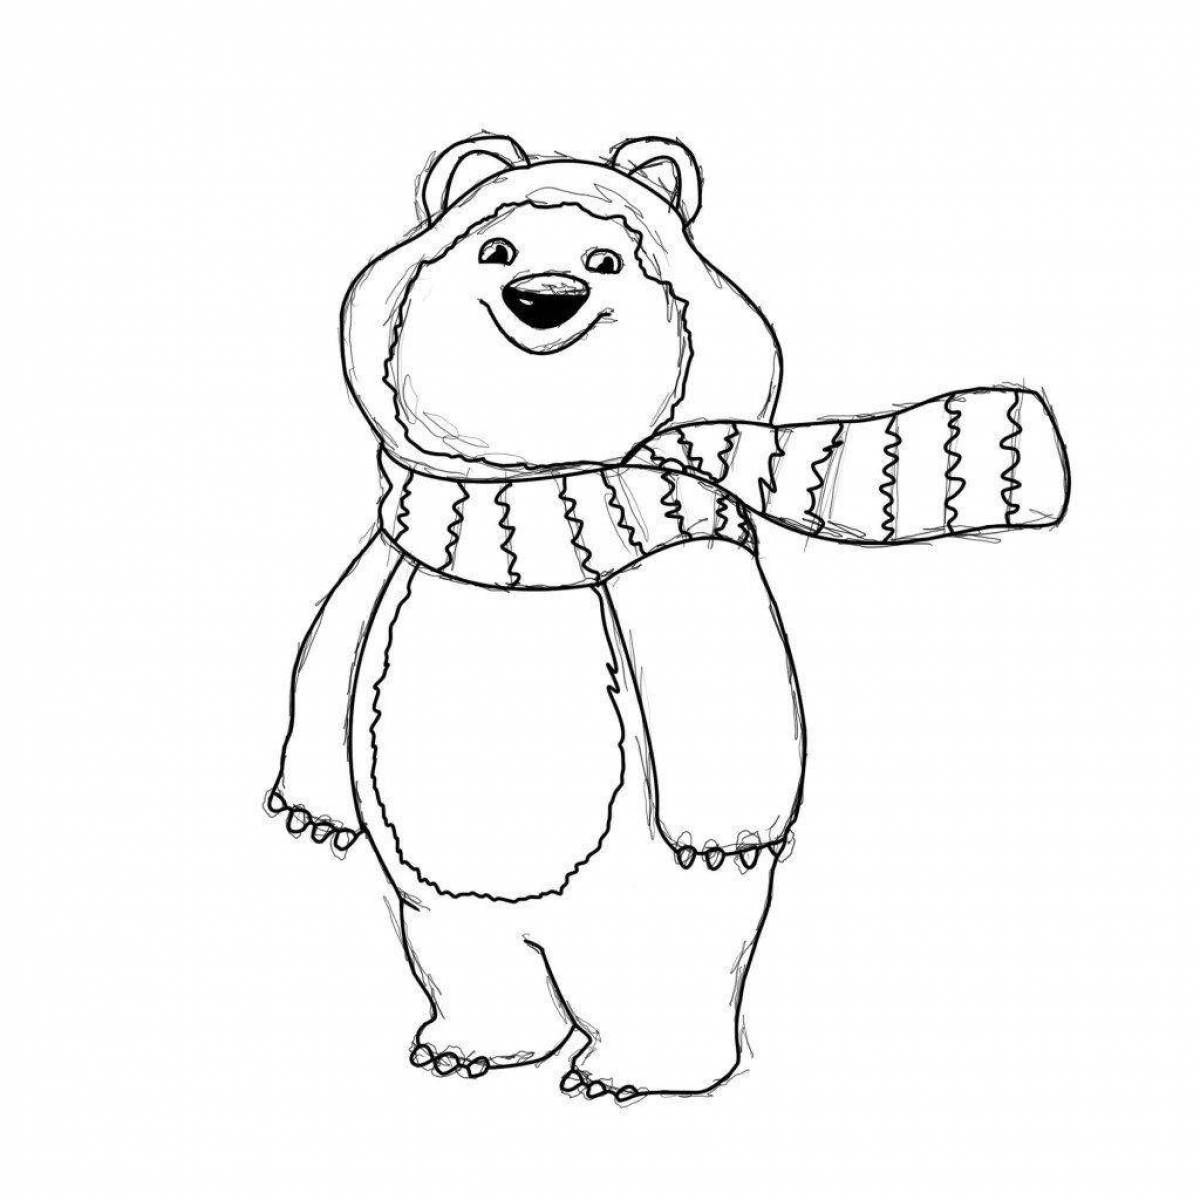 Раскраска сверкающий олимпийский медведь